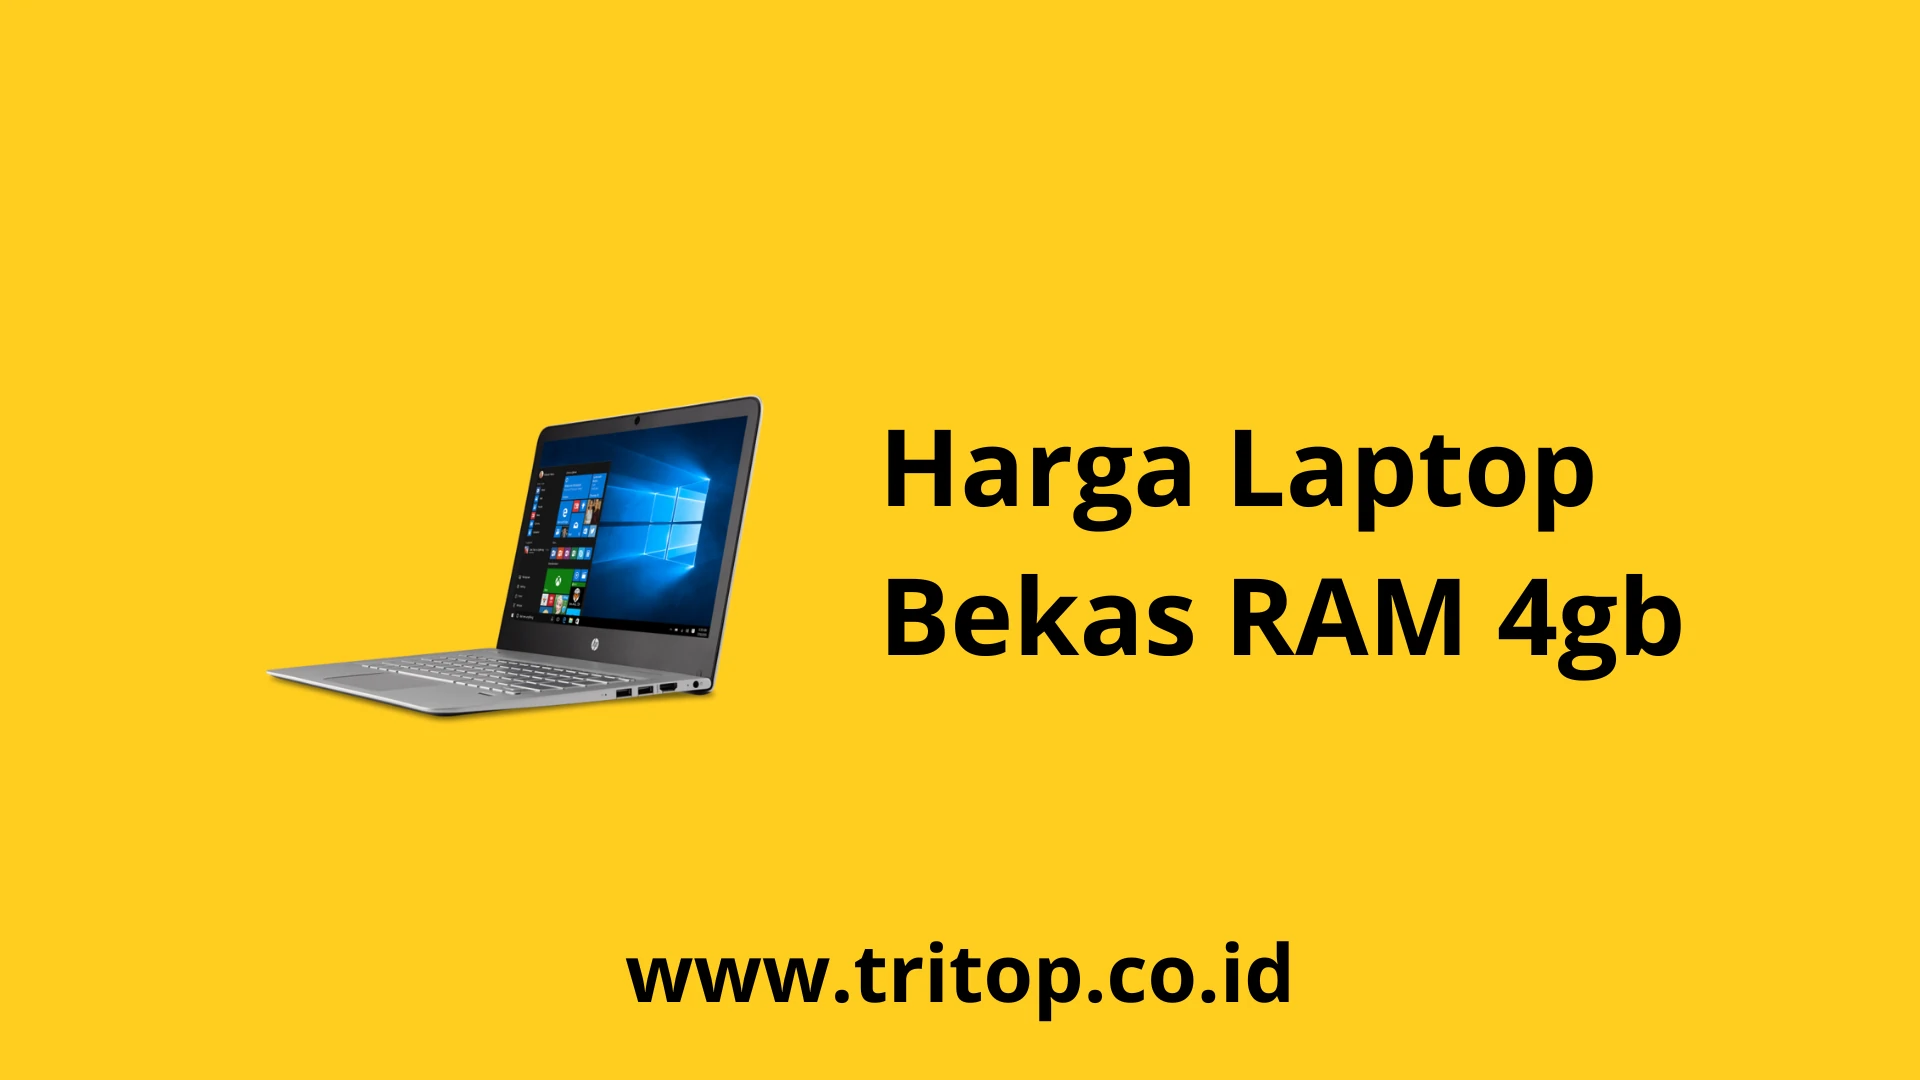 Harga Laptop Bekas RAM 4gb Tritop.co.id~1